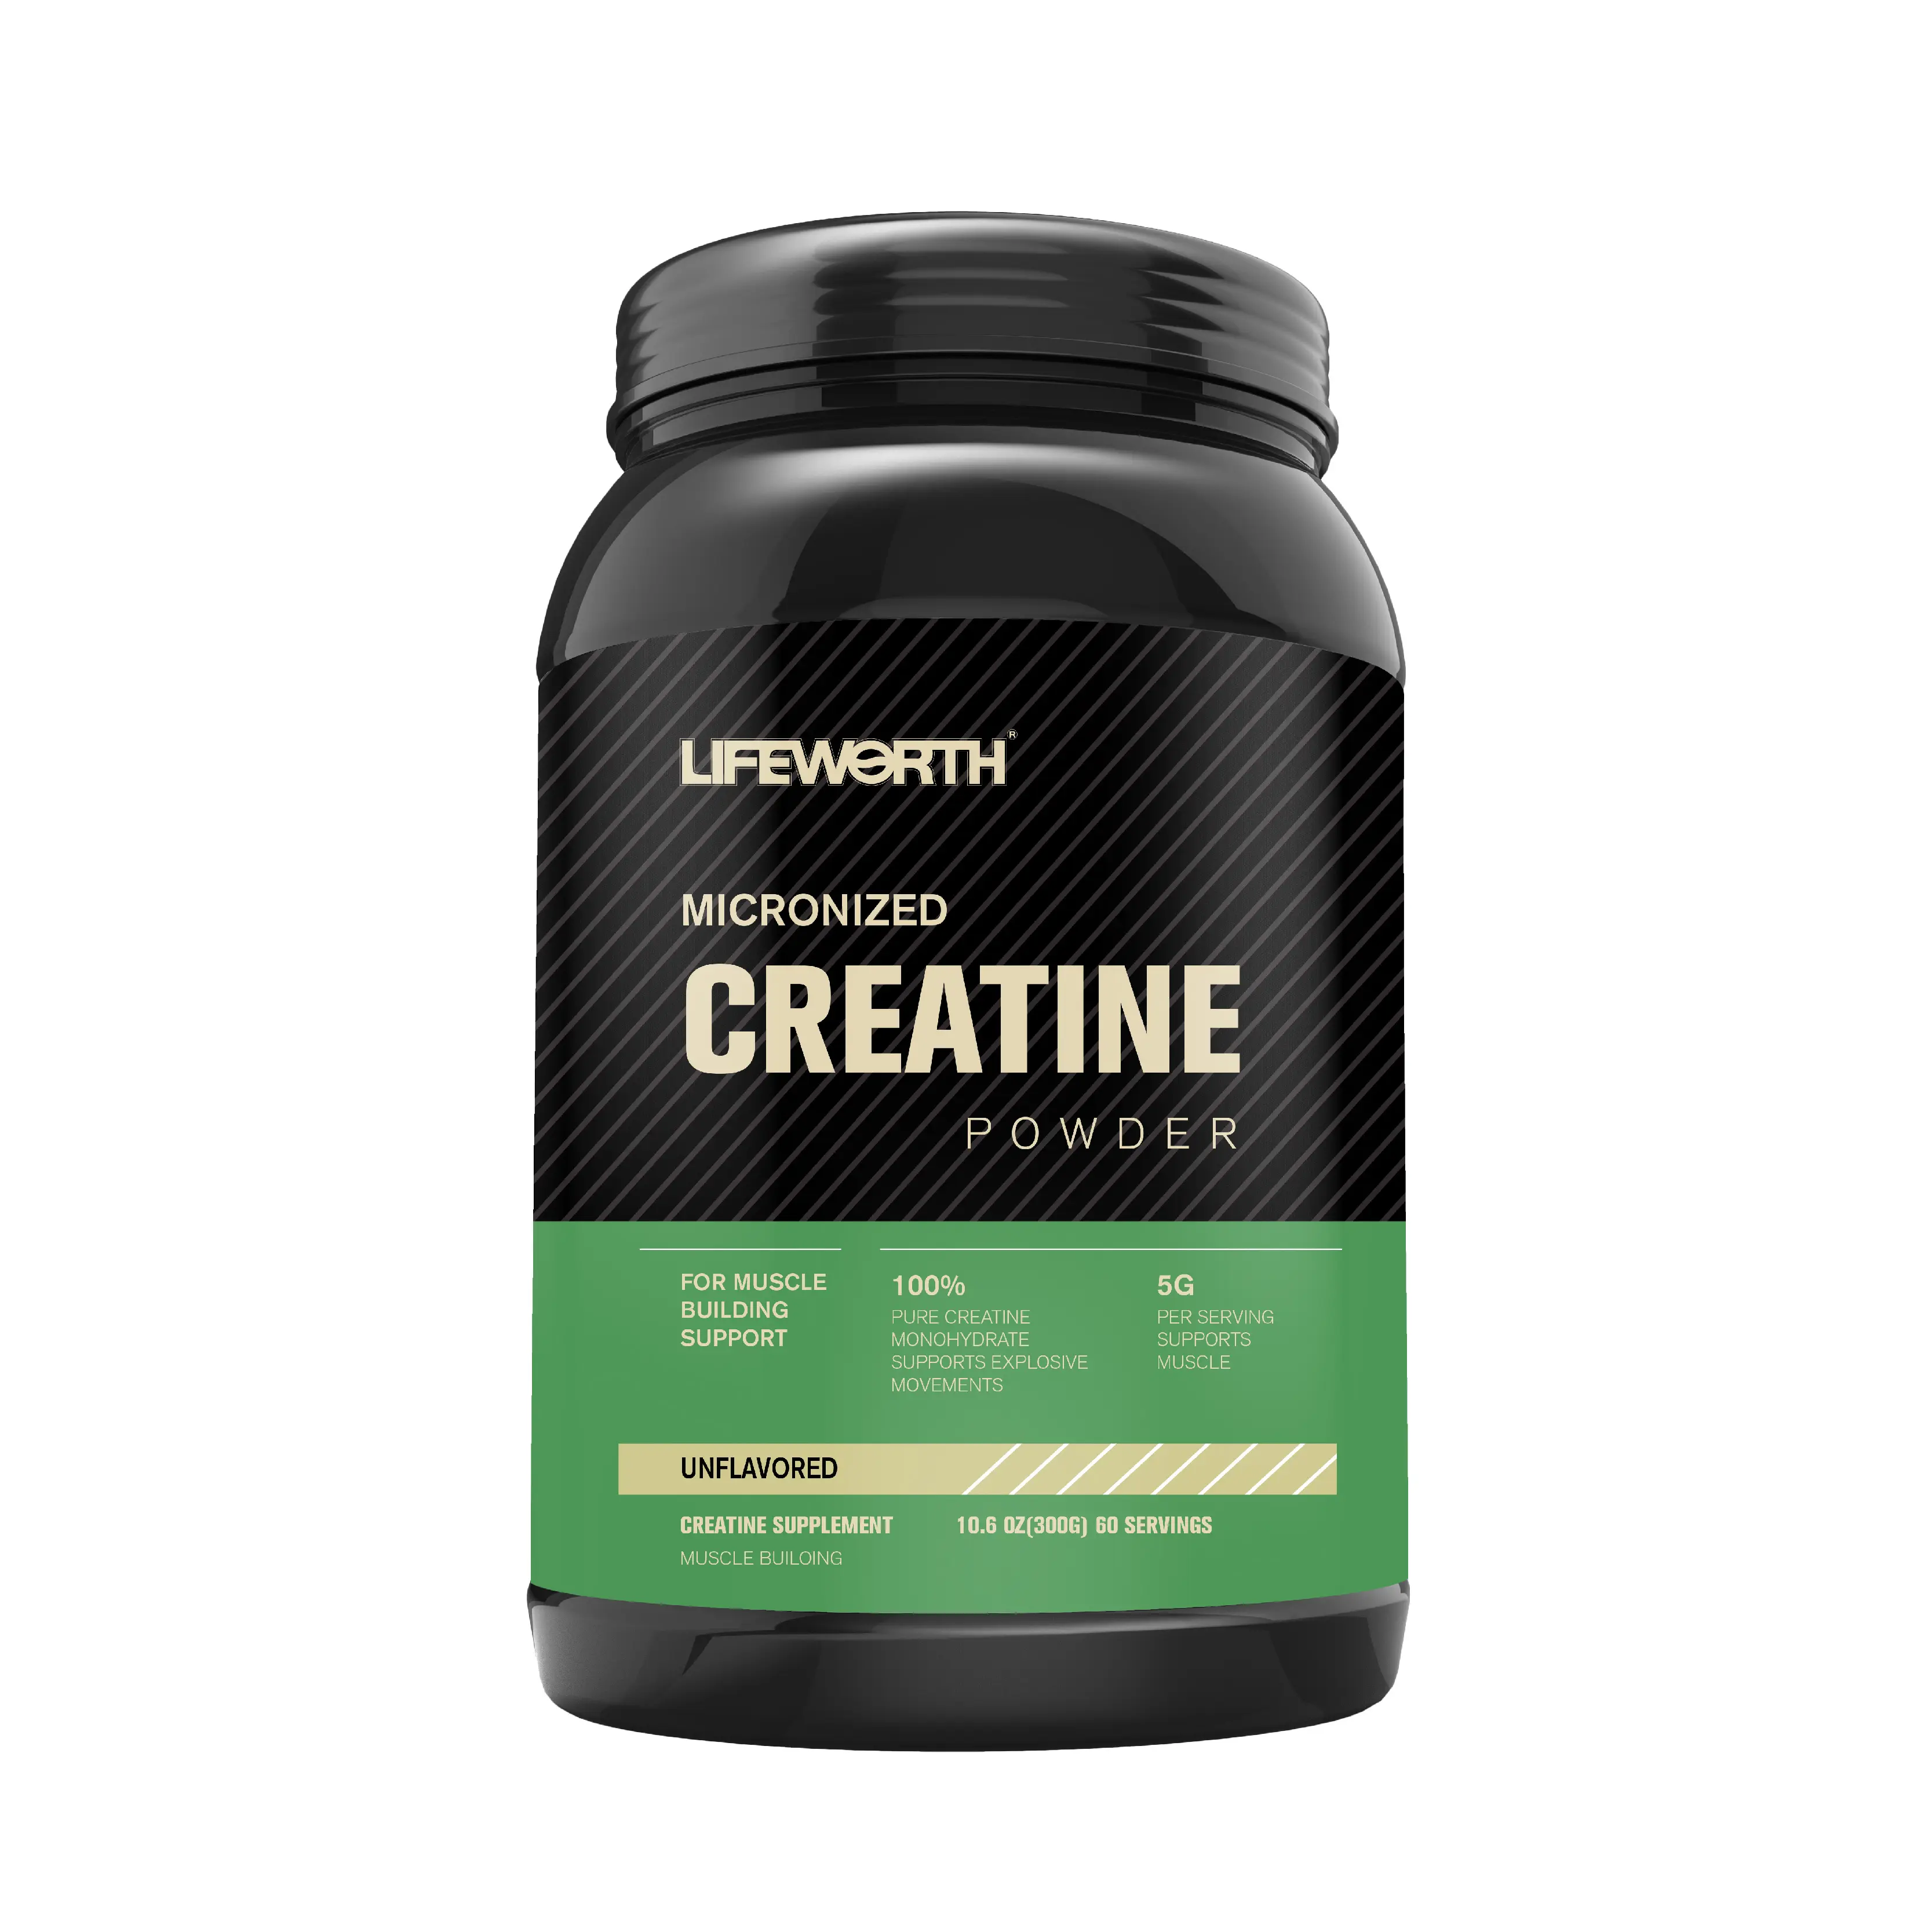 lifeworth pre workout bodybuilding supplement creatine monohydrate bulk energy drink powder caffeine powder